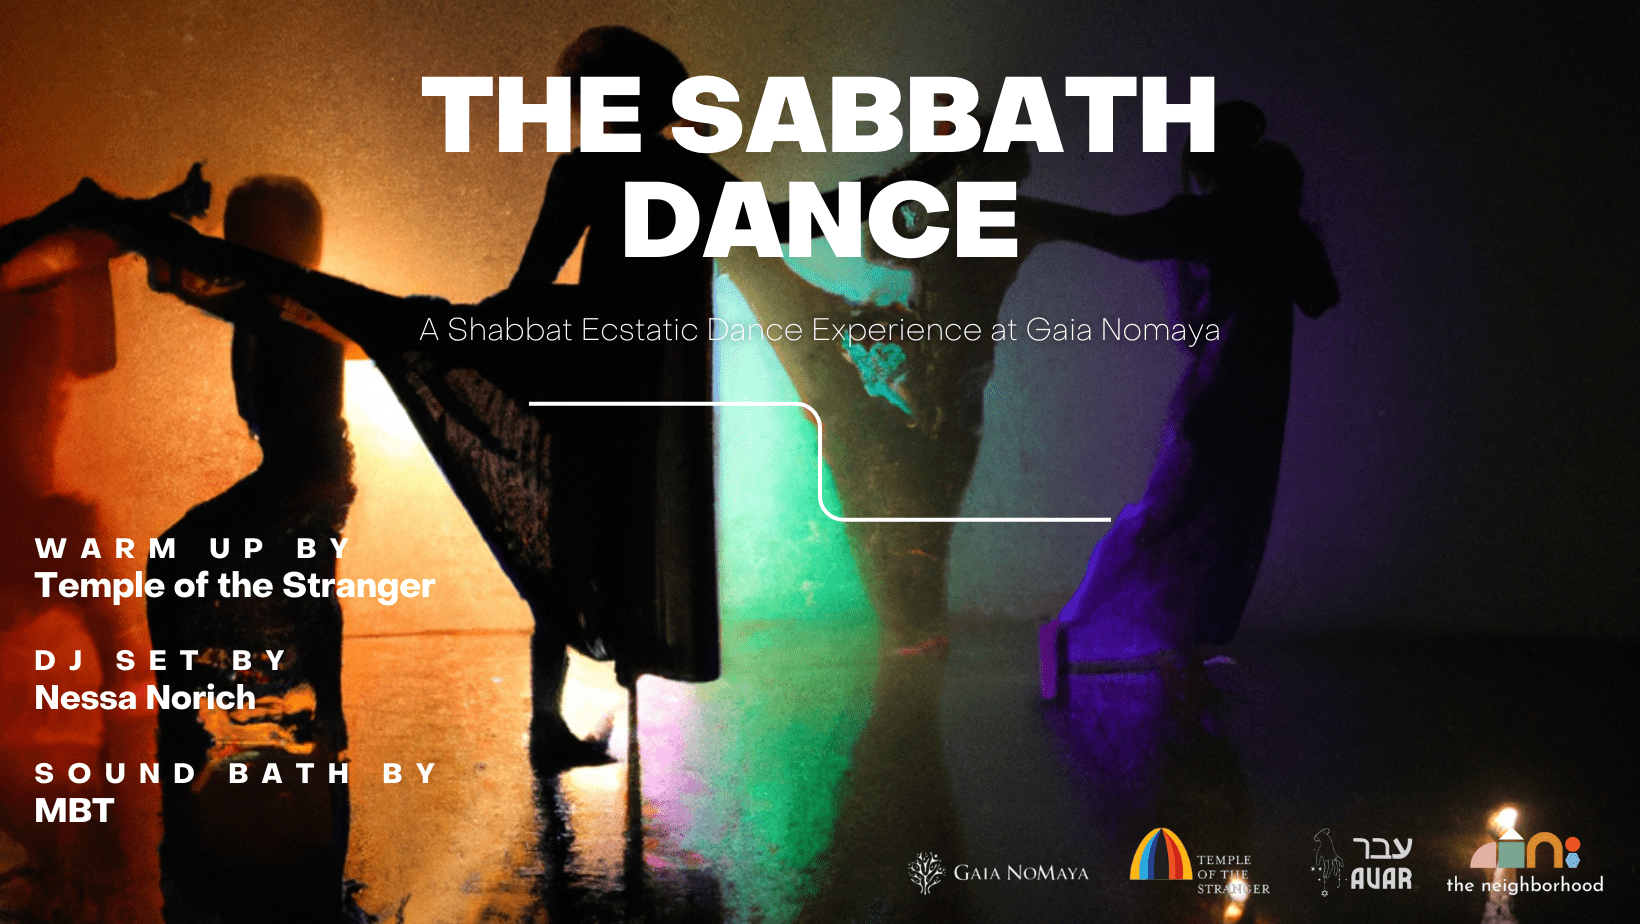 The Sabbath Dance